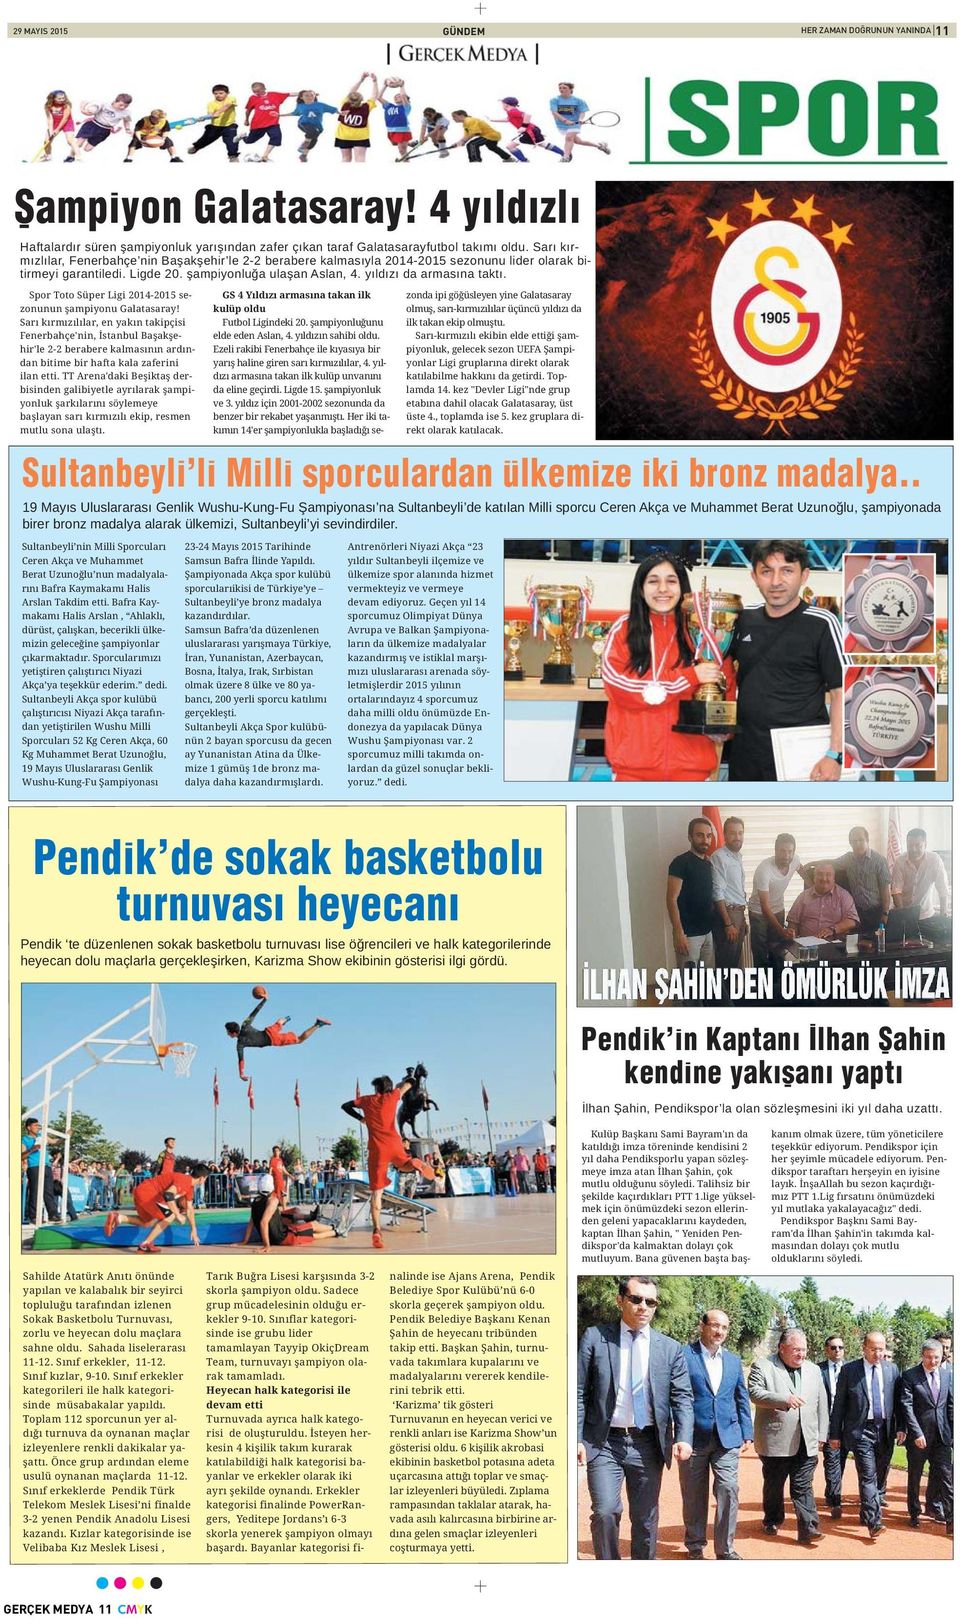 Spor Toto Süper Ligi 2014-2015 sezonunun şampiyonu Galatasaray!